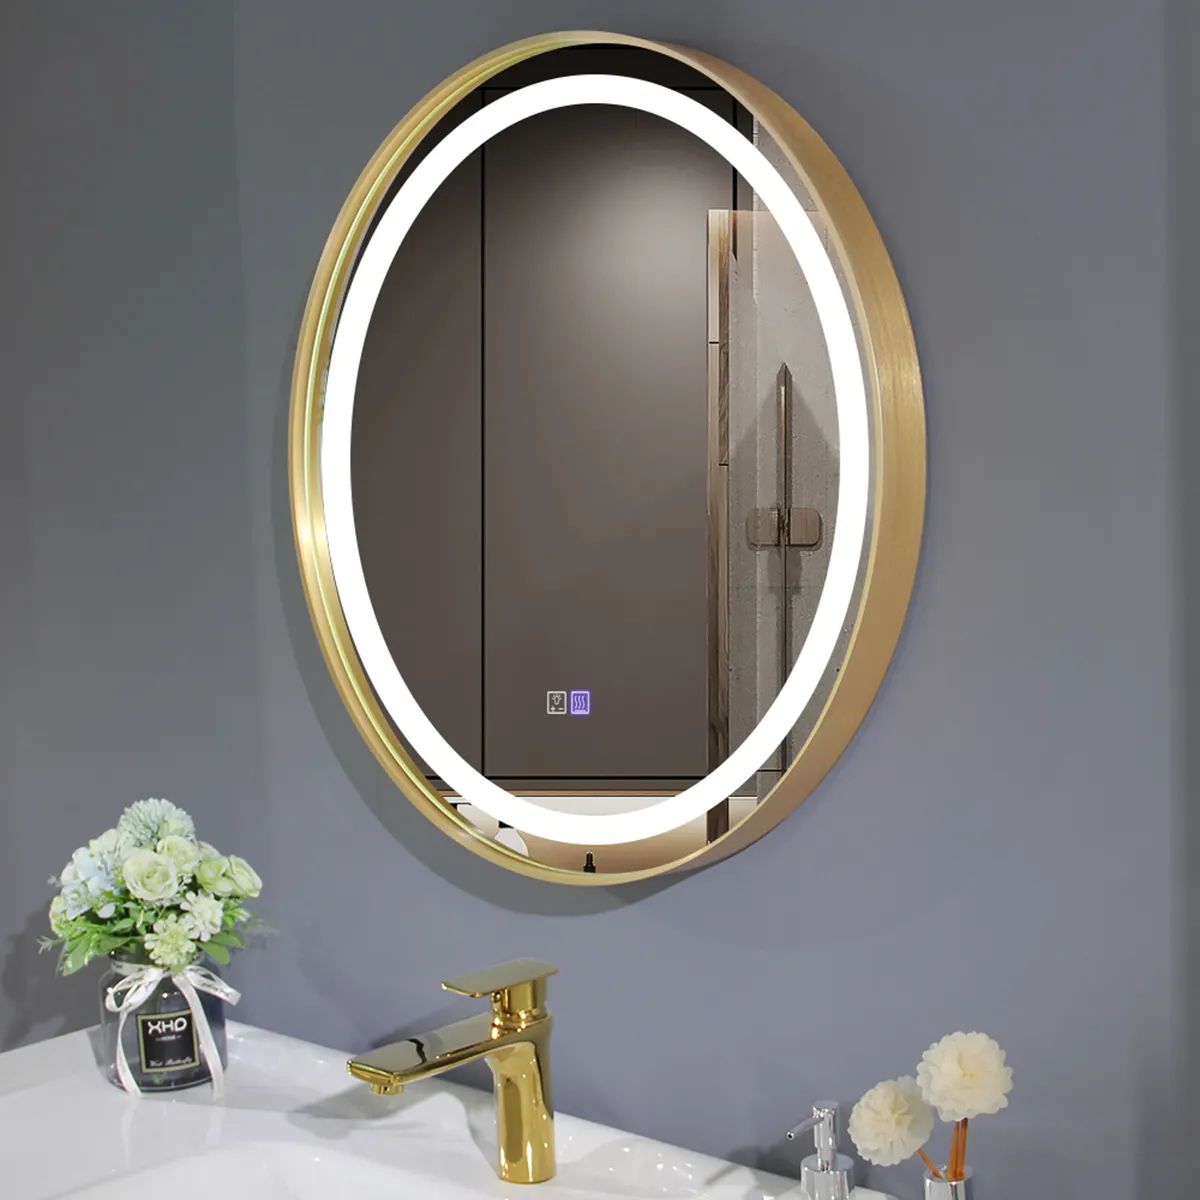 กระจกโต๊ะเครื่องแป้งกรอบกลม,กระจกส่องสว่างหรี่แสงได้ป้องกันหมอก IP44กระจกติดผนังห้องน้ำกันน้ำพร้อมไฟ